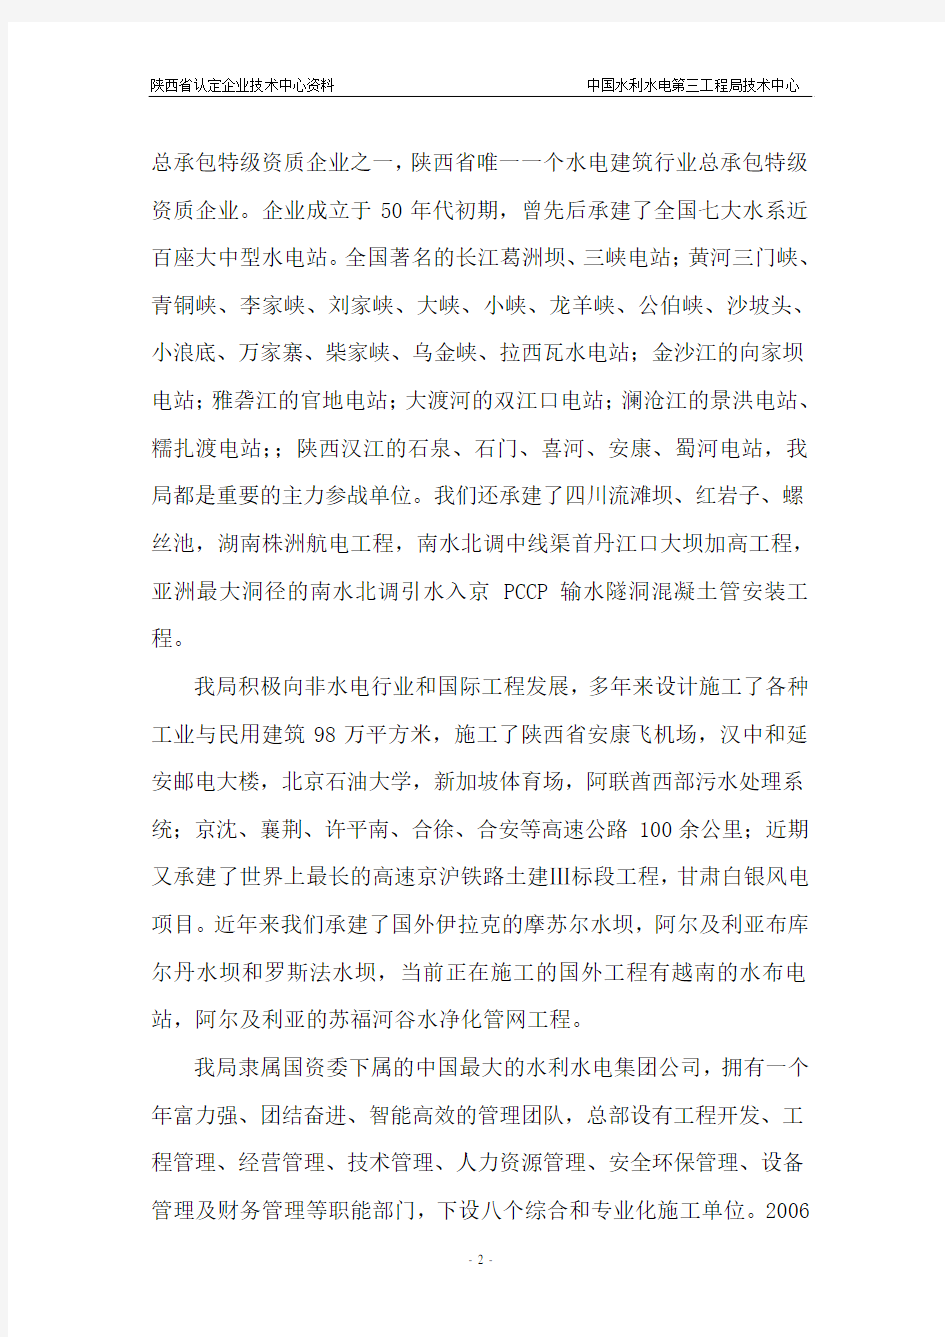 陕西省认定企业技术中心资料